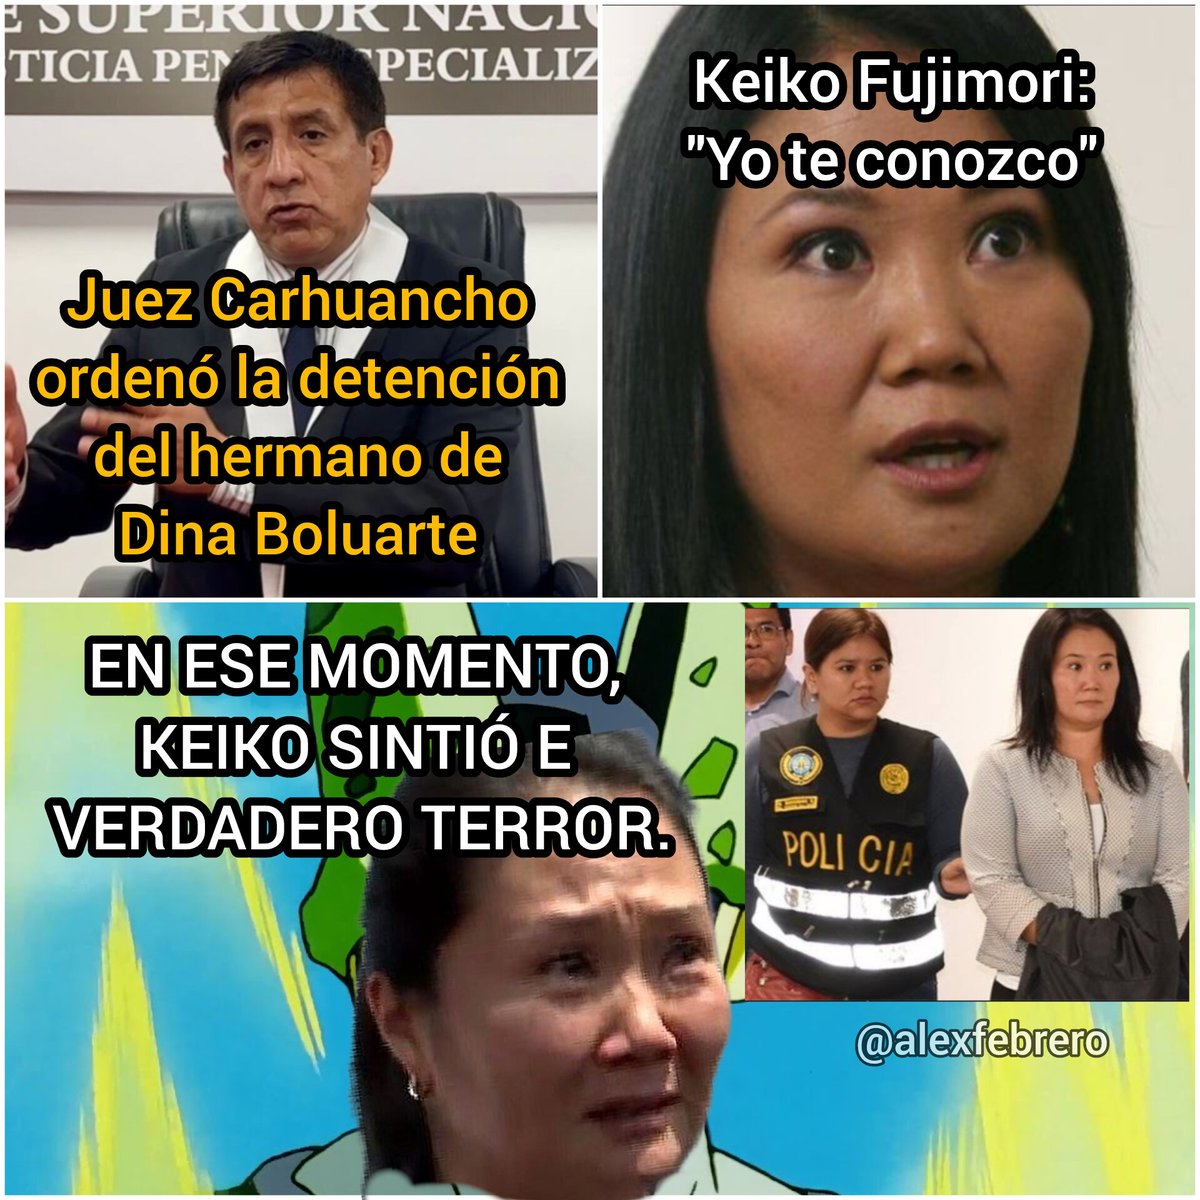 Keiko Fujimori teniendo recuerdos de Vietnam al ver a Richard Carhuancho nuevamente en las noticias luego de mandar a detener al hermano de Dina Boluarte, Nicanor Boluarte 💀.
#DinaAsesina